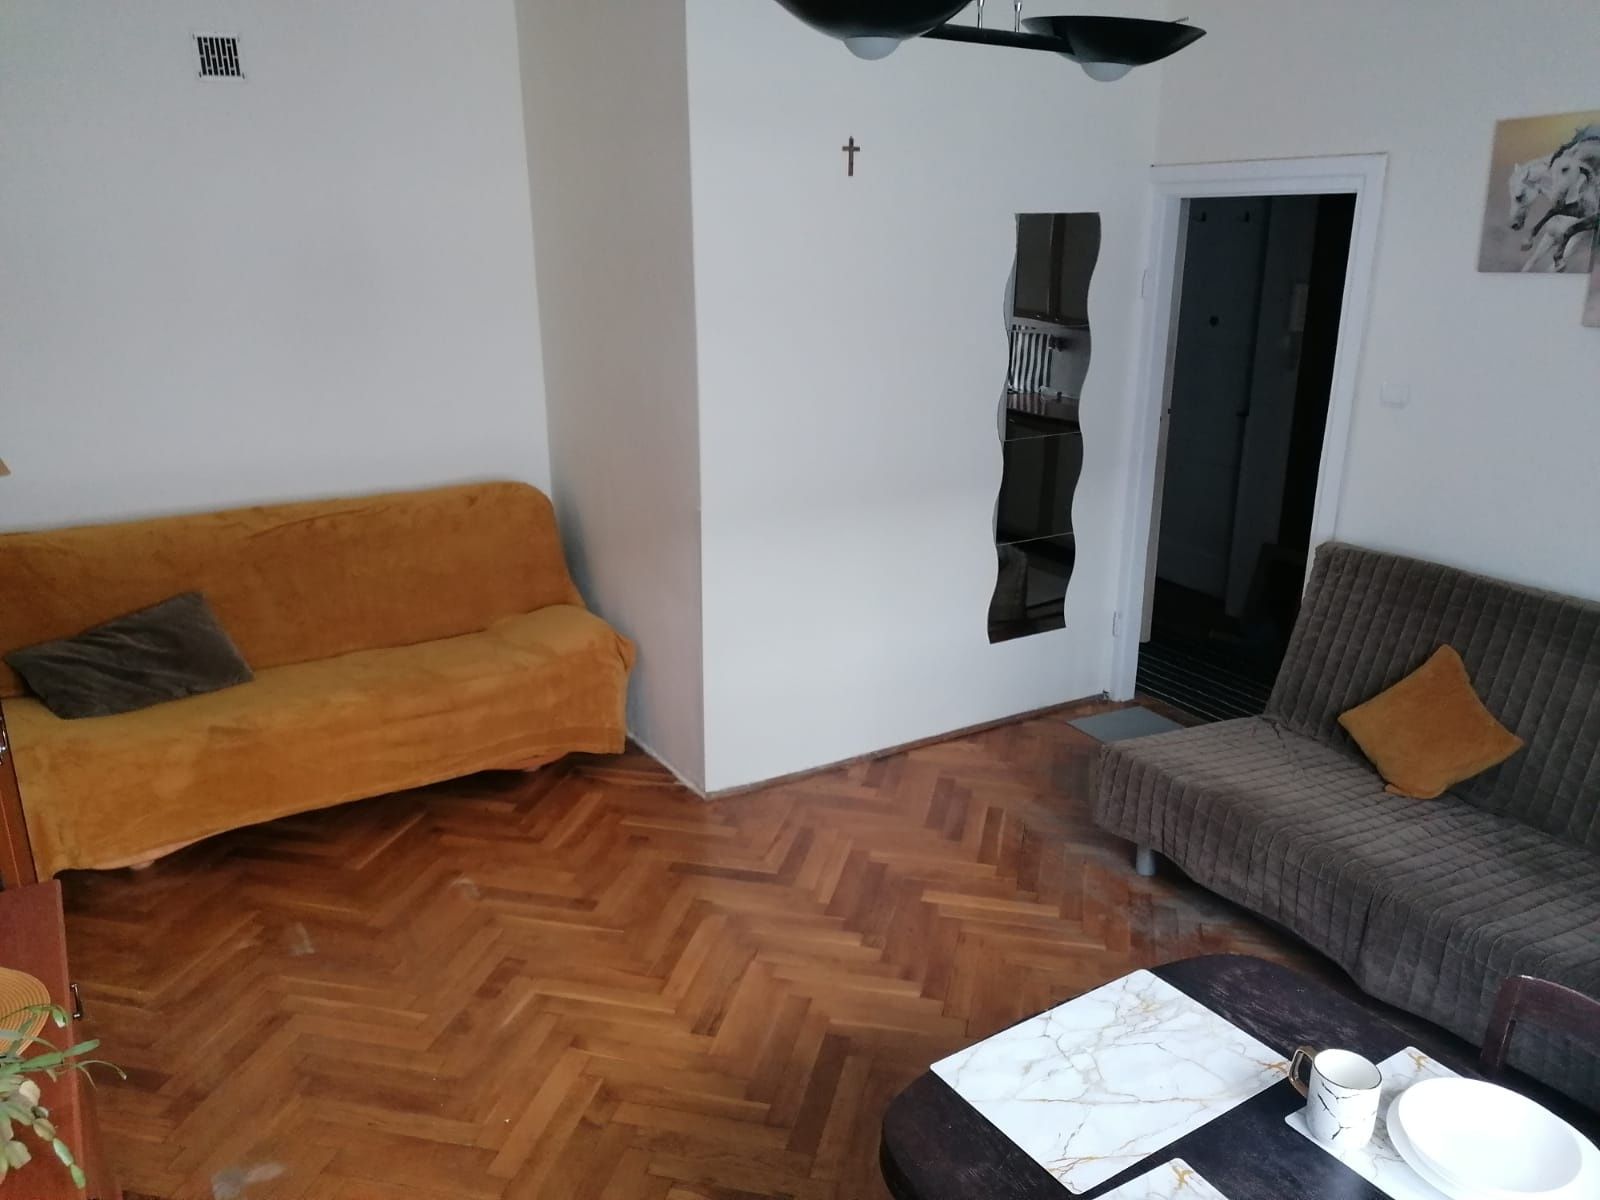 Mieszkanie wynajem Żoliborz/Nice flat to rent Warsaw